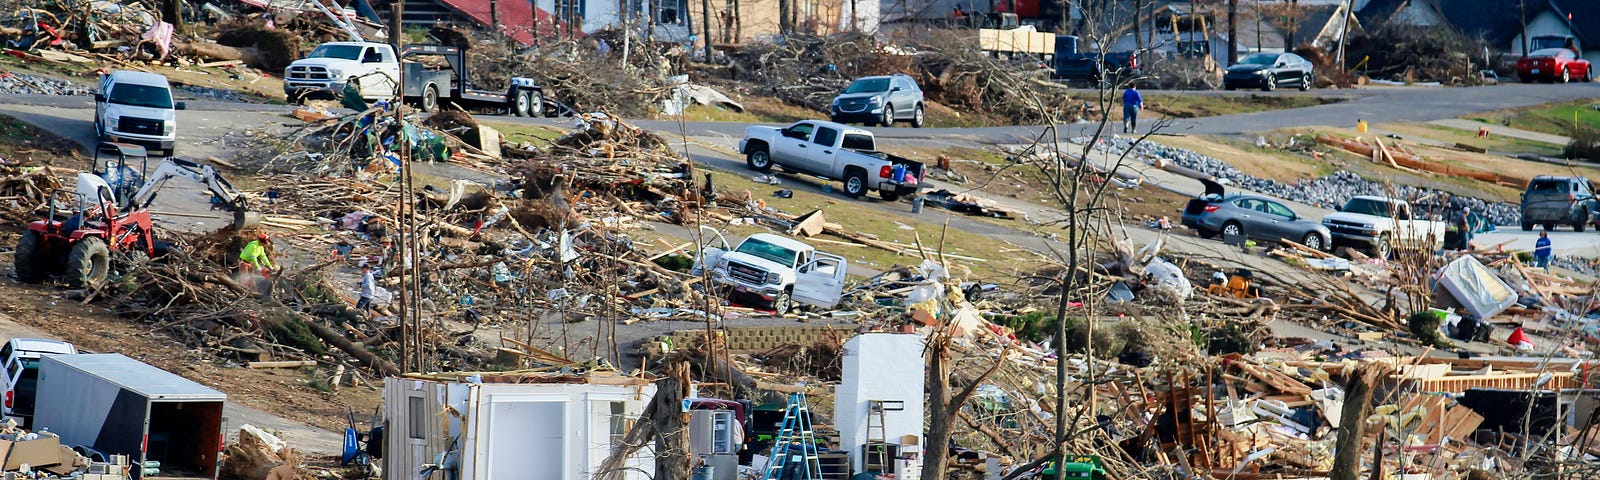 Neighborhood destroyed by tornado. Helpers working on cleanup.